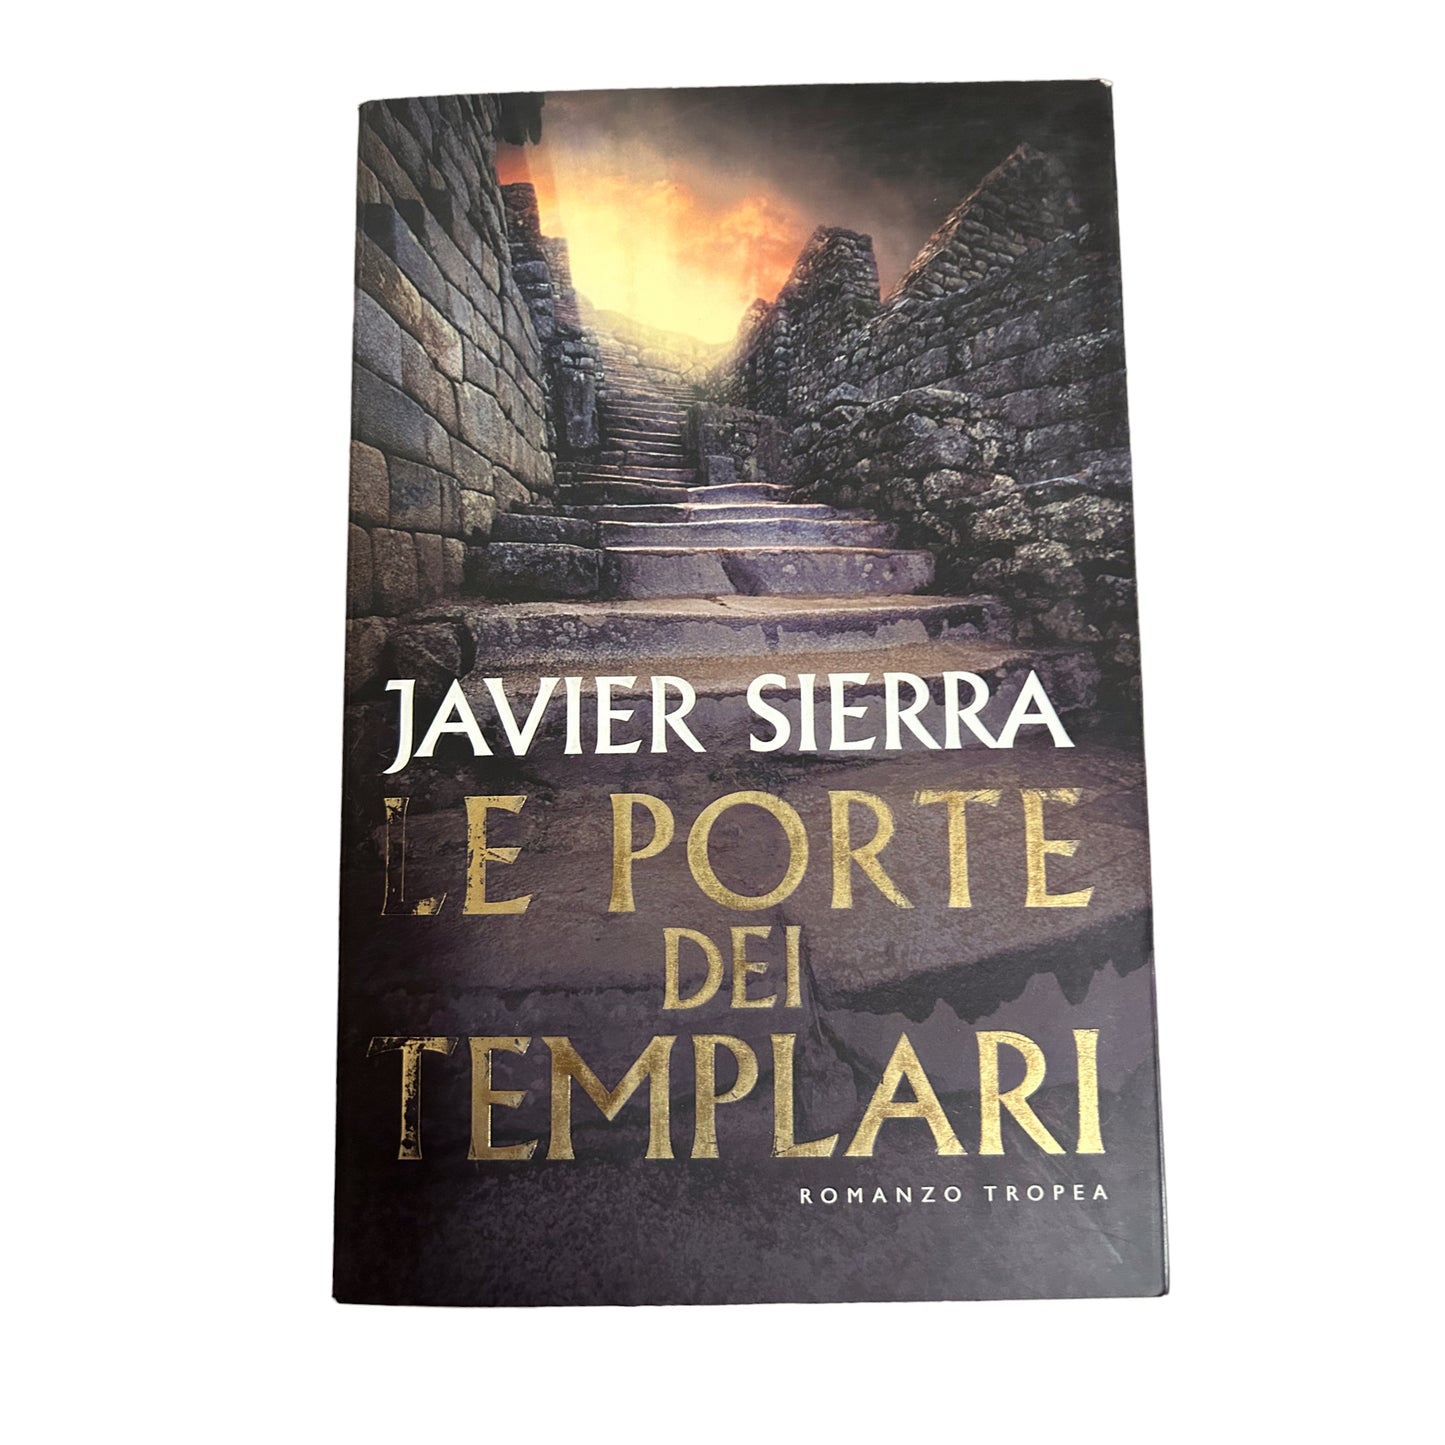 Le porte dei templari - Javier Sierra